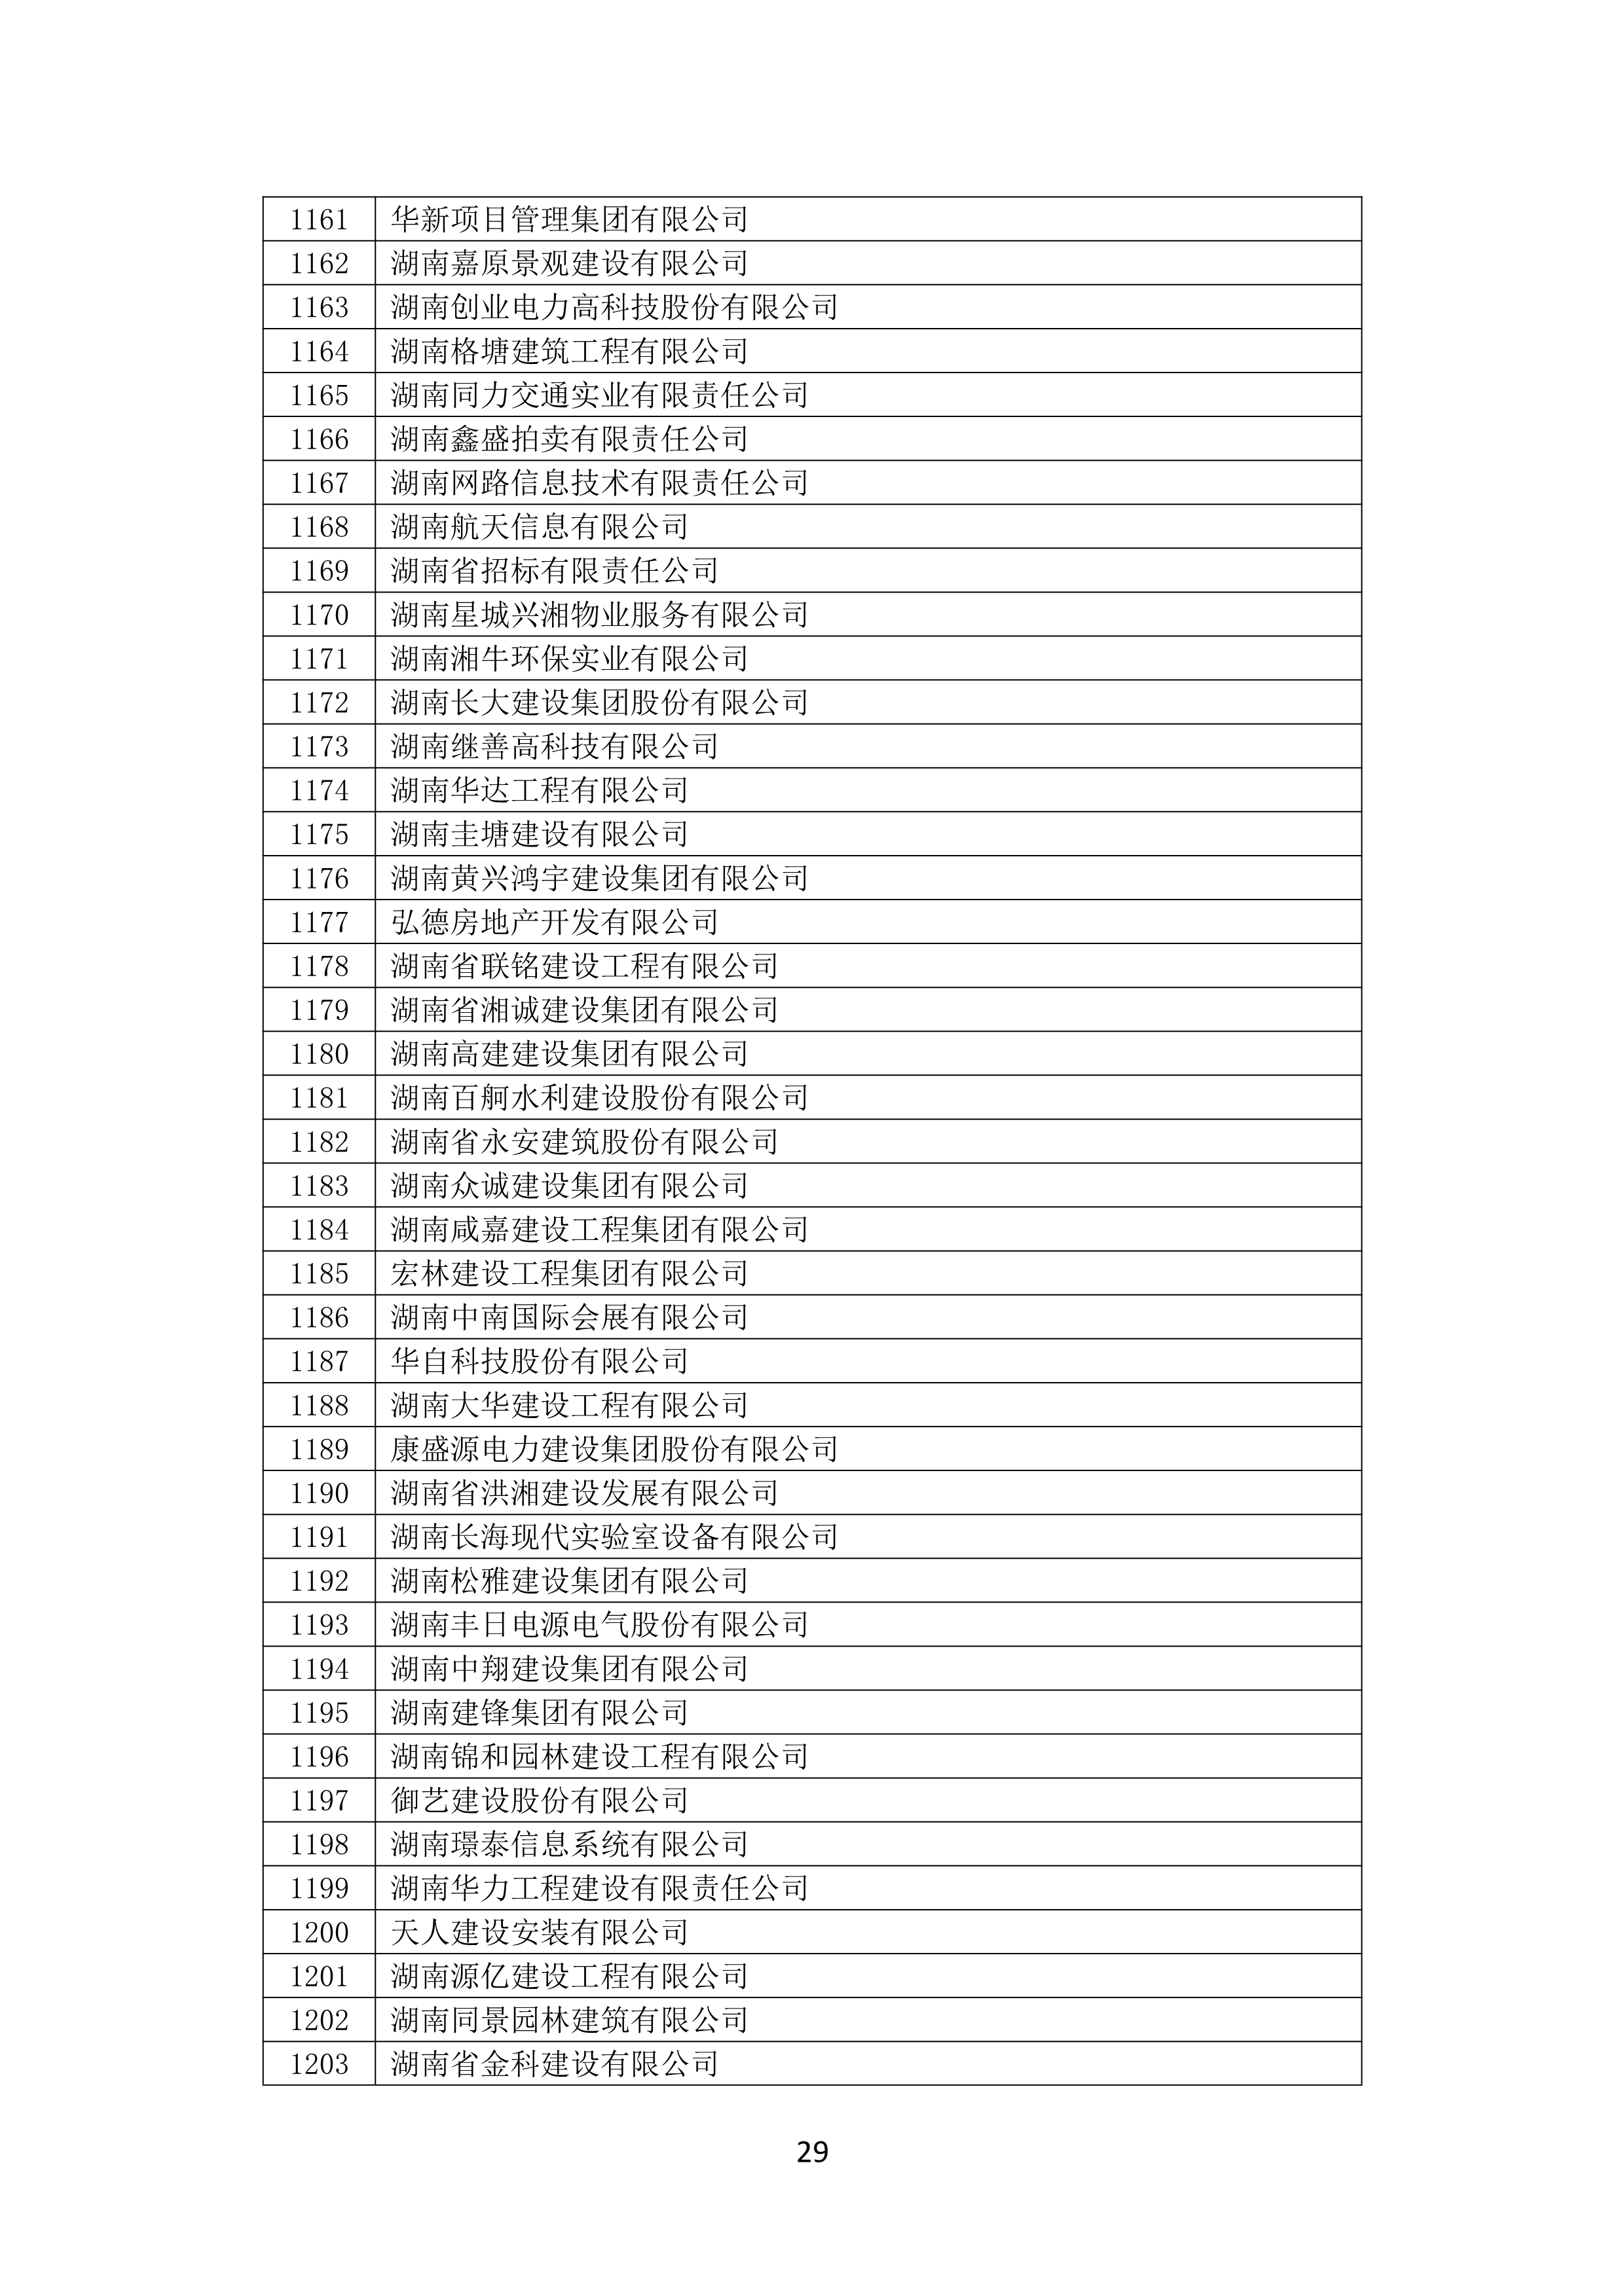 2021 年(nián)度湖南省守合同重信用企業名單_30.png